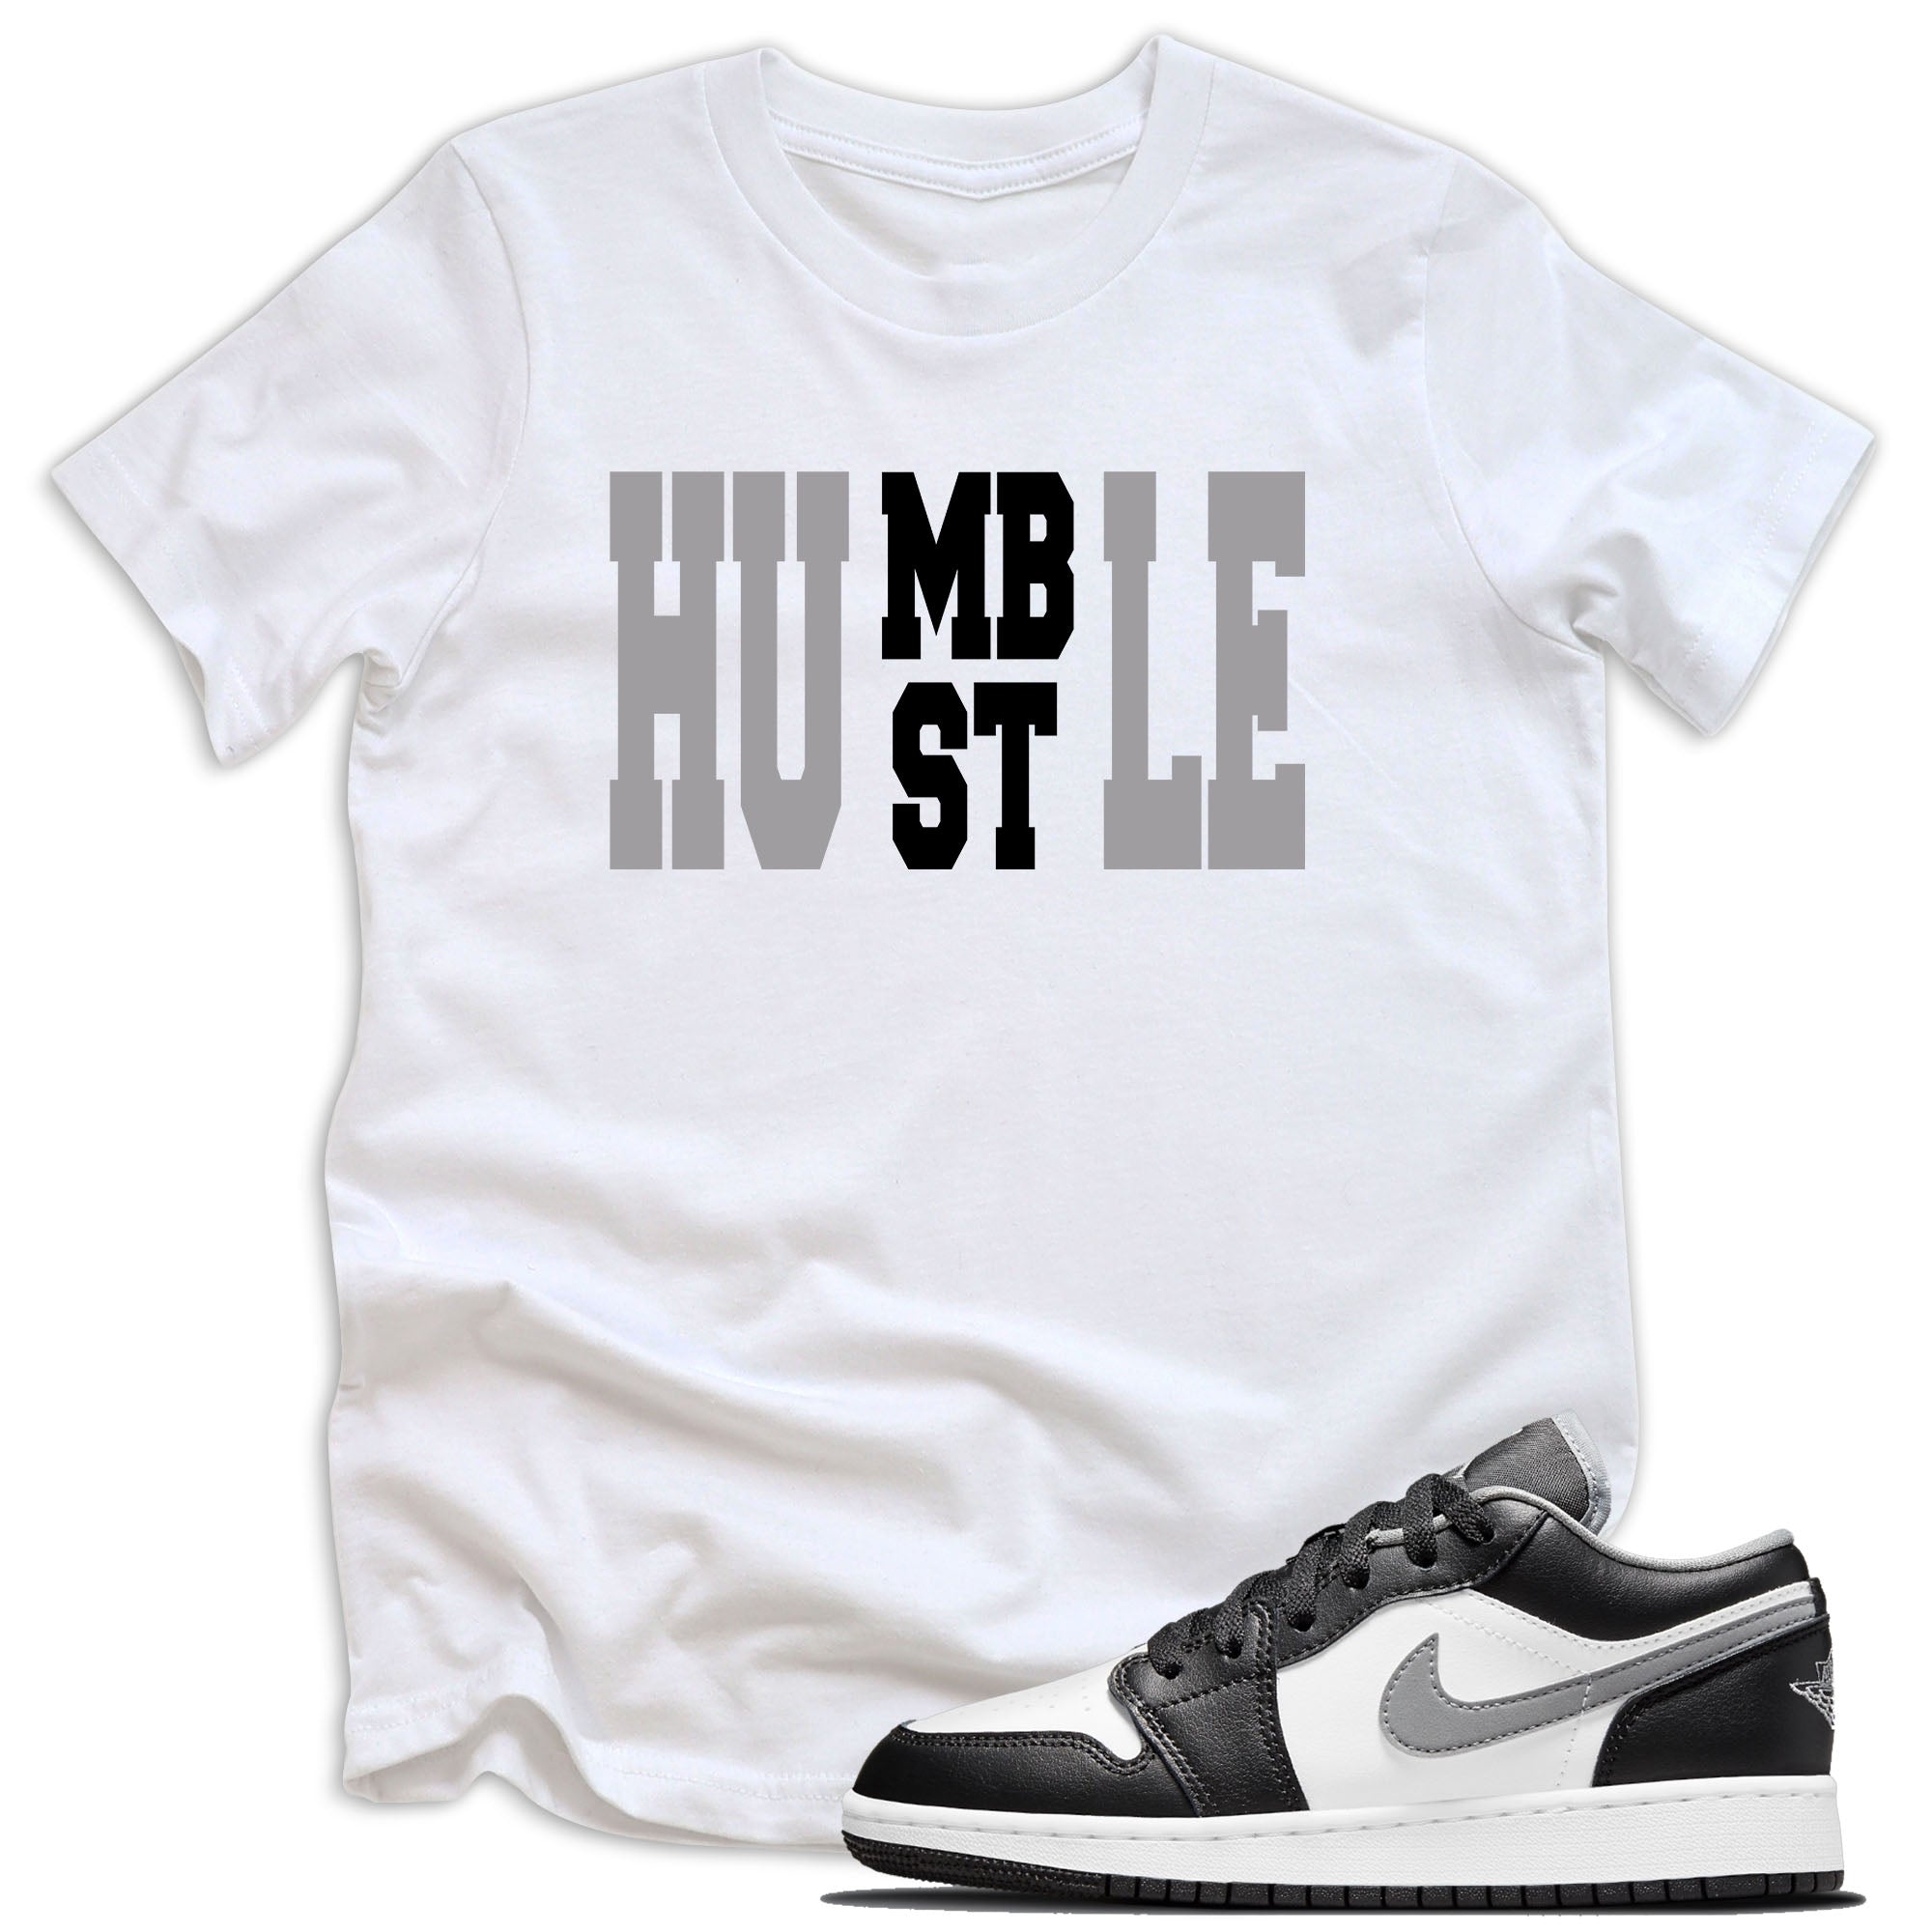 Humble Hustle Shirt AJ 1 Low Black White Grey 2021 photo